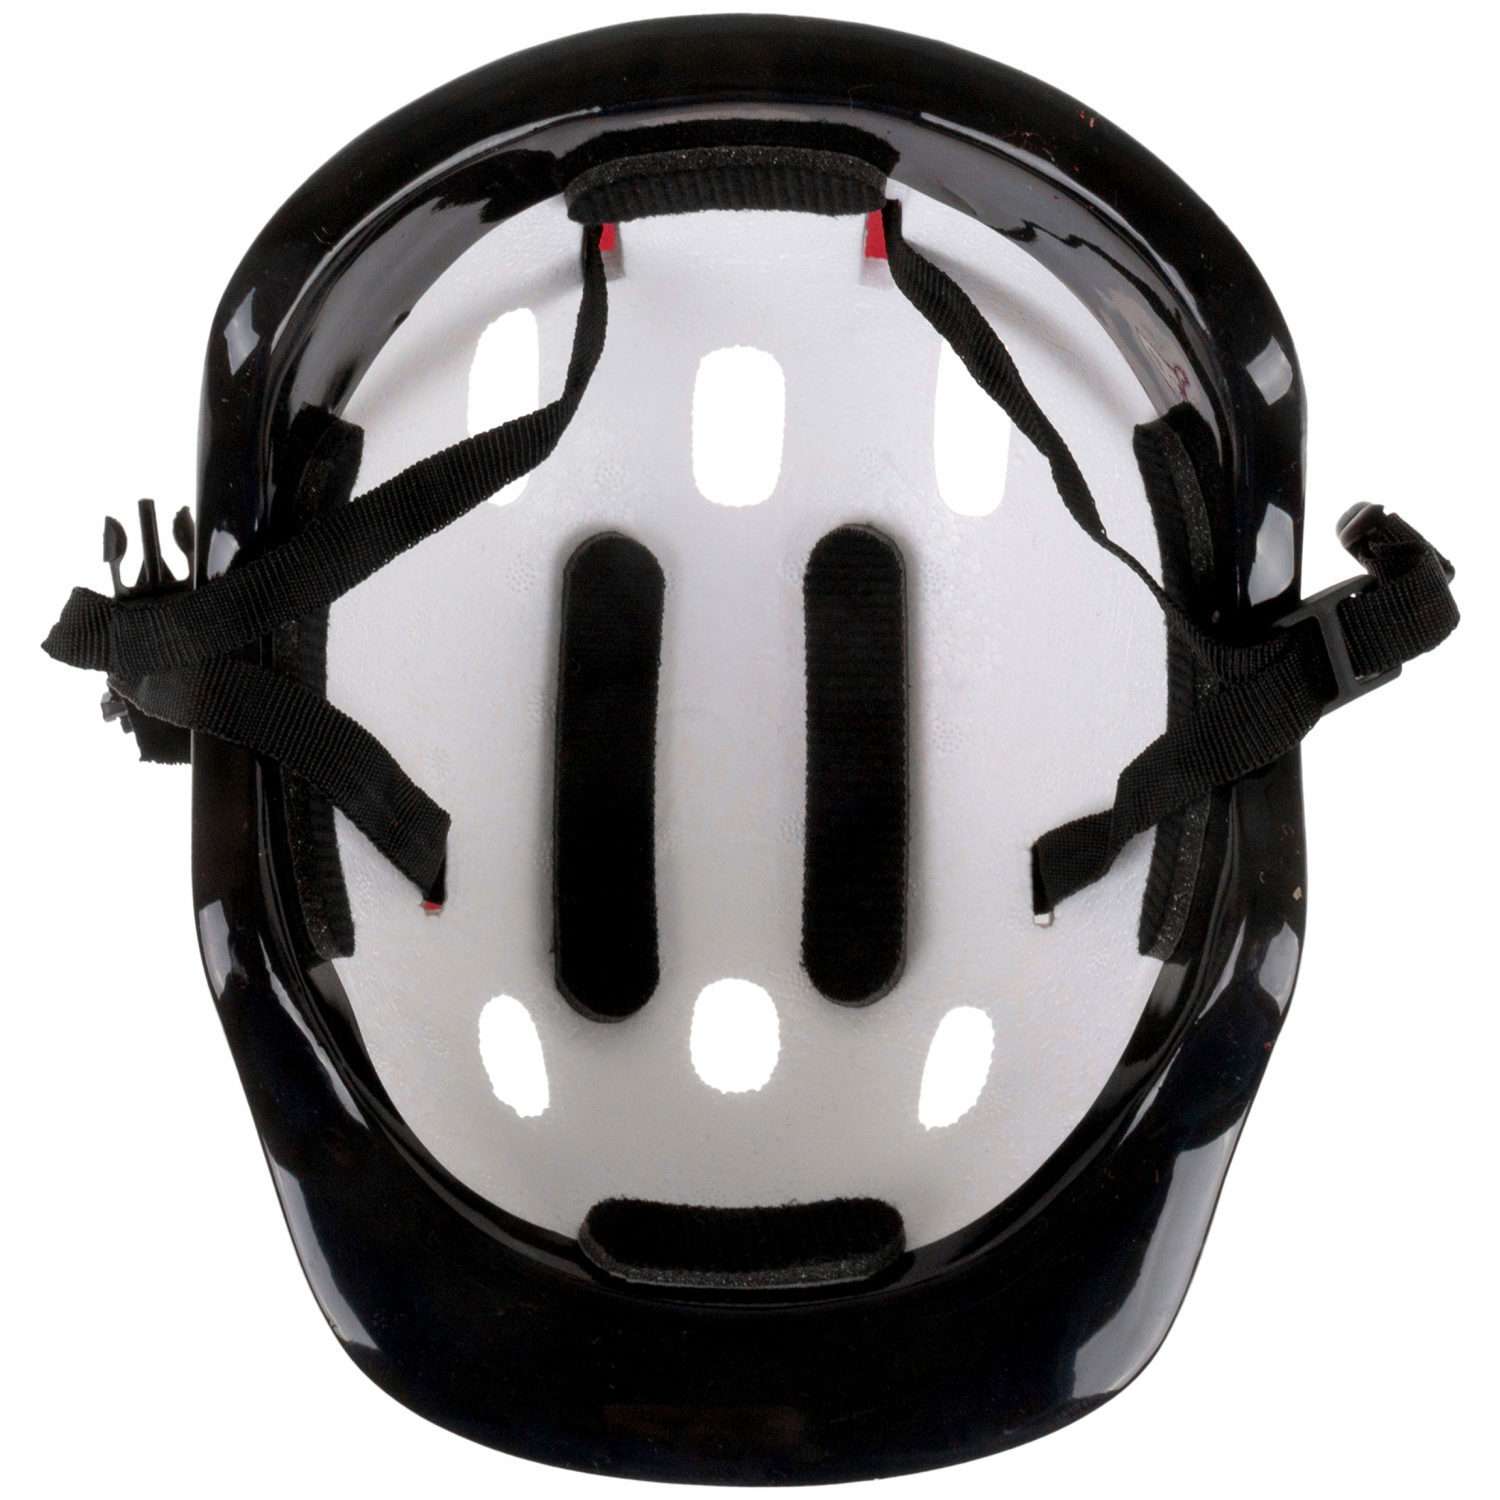 Ролики Navigator детские раздвижные 34 - 37 размер с защитой и шлемом красный - фото 15